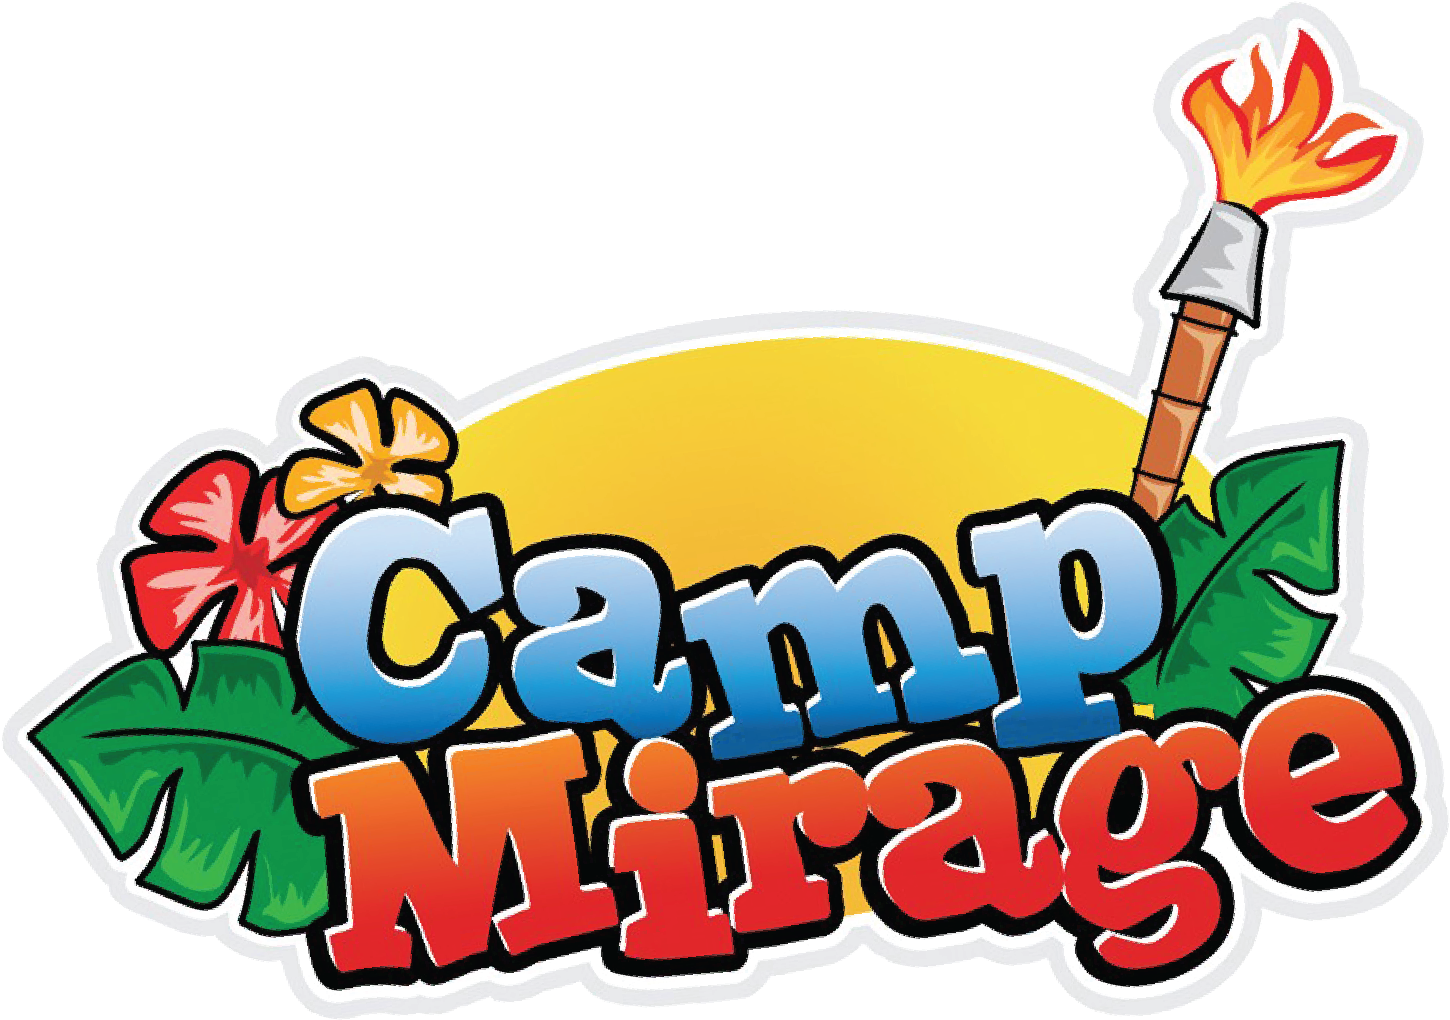 Camp Mirage - Cartoons Camp Day Logo (1462x1462)